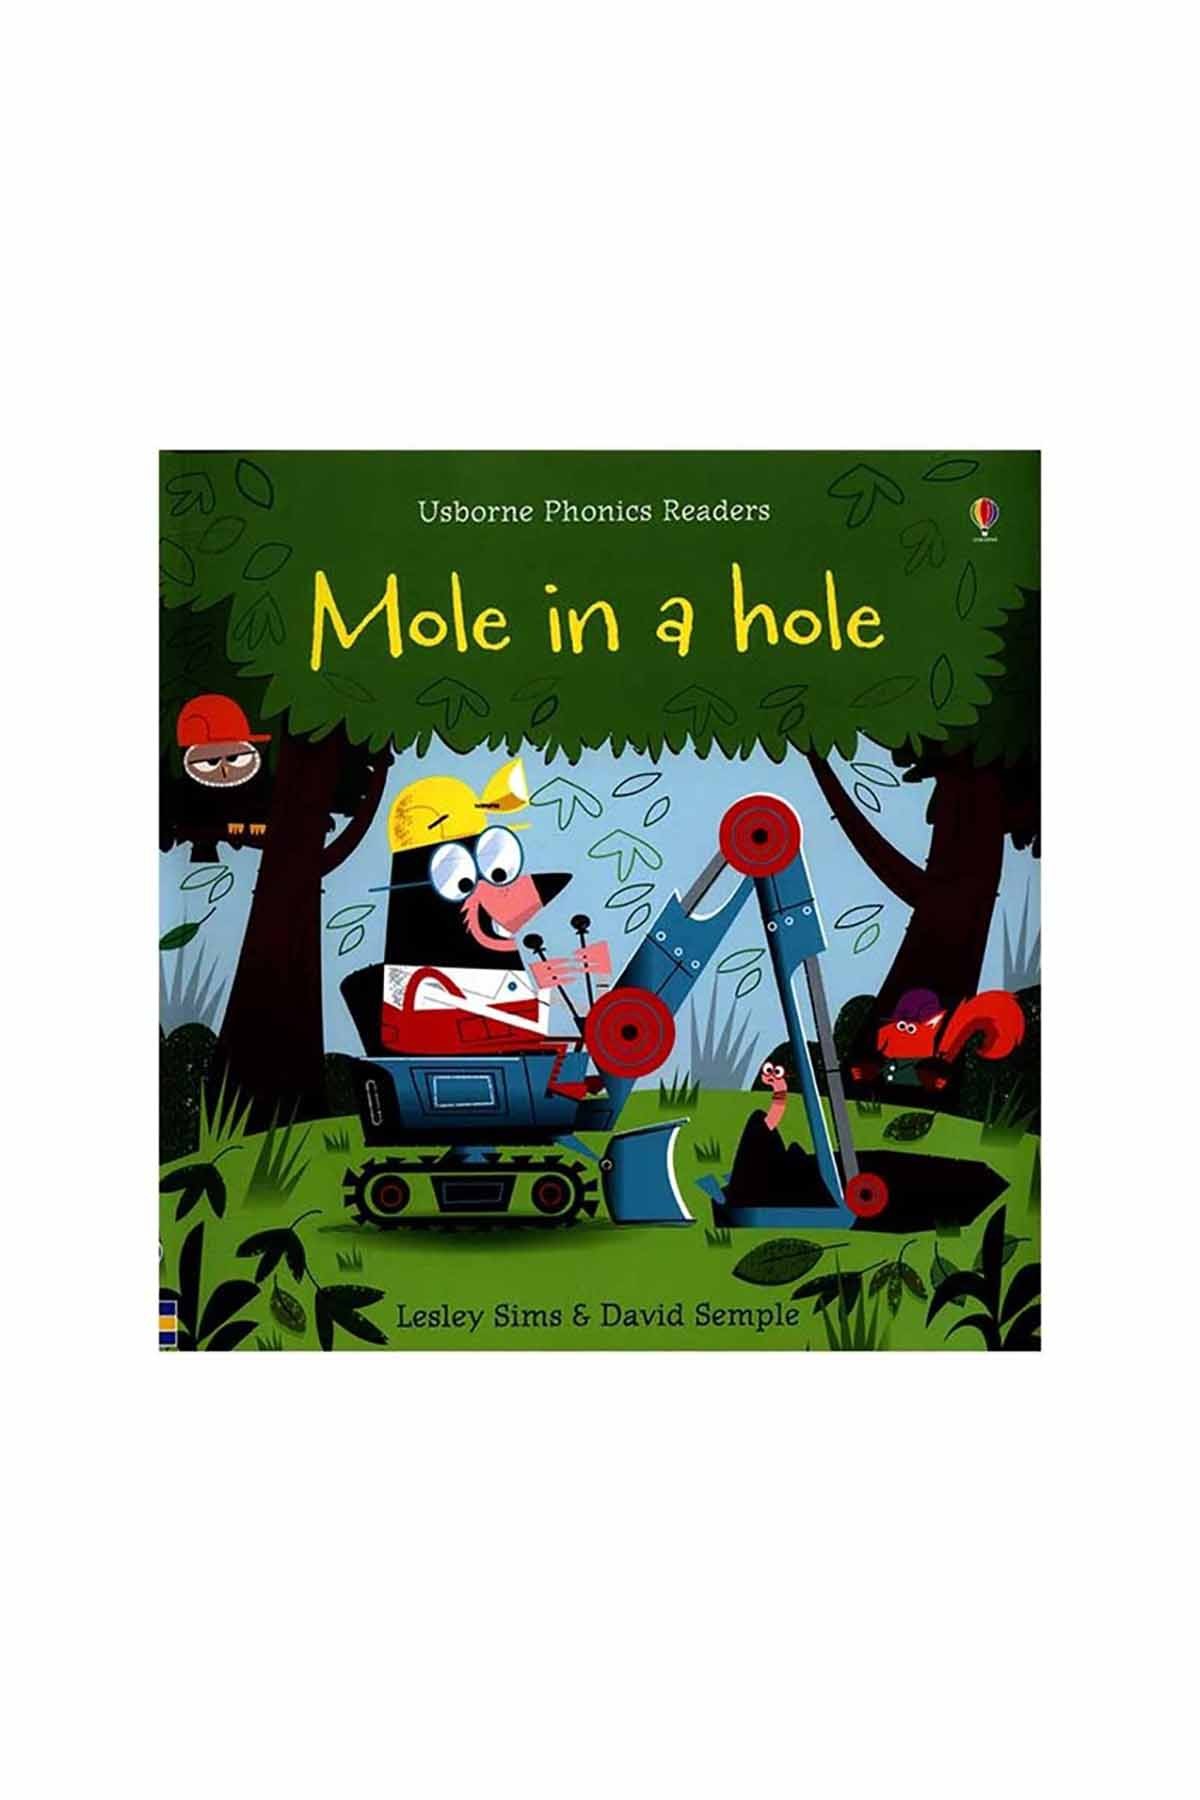 The Usborne Mole In A Hole